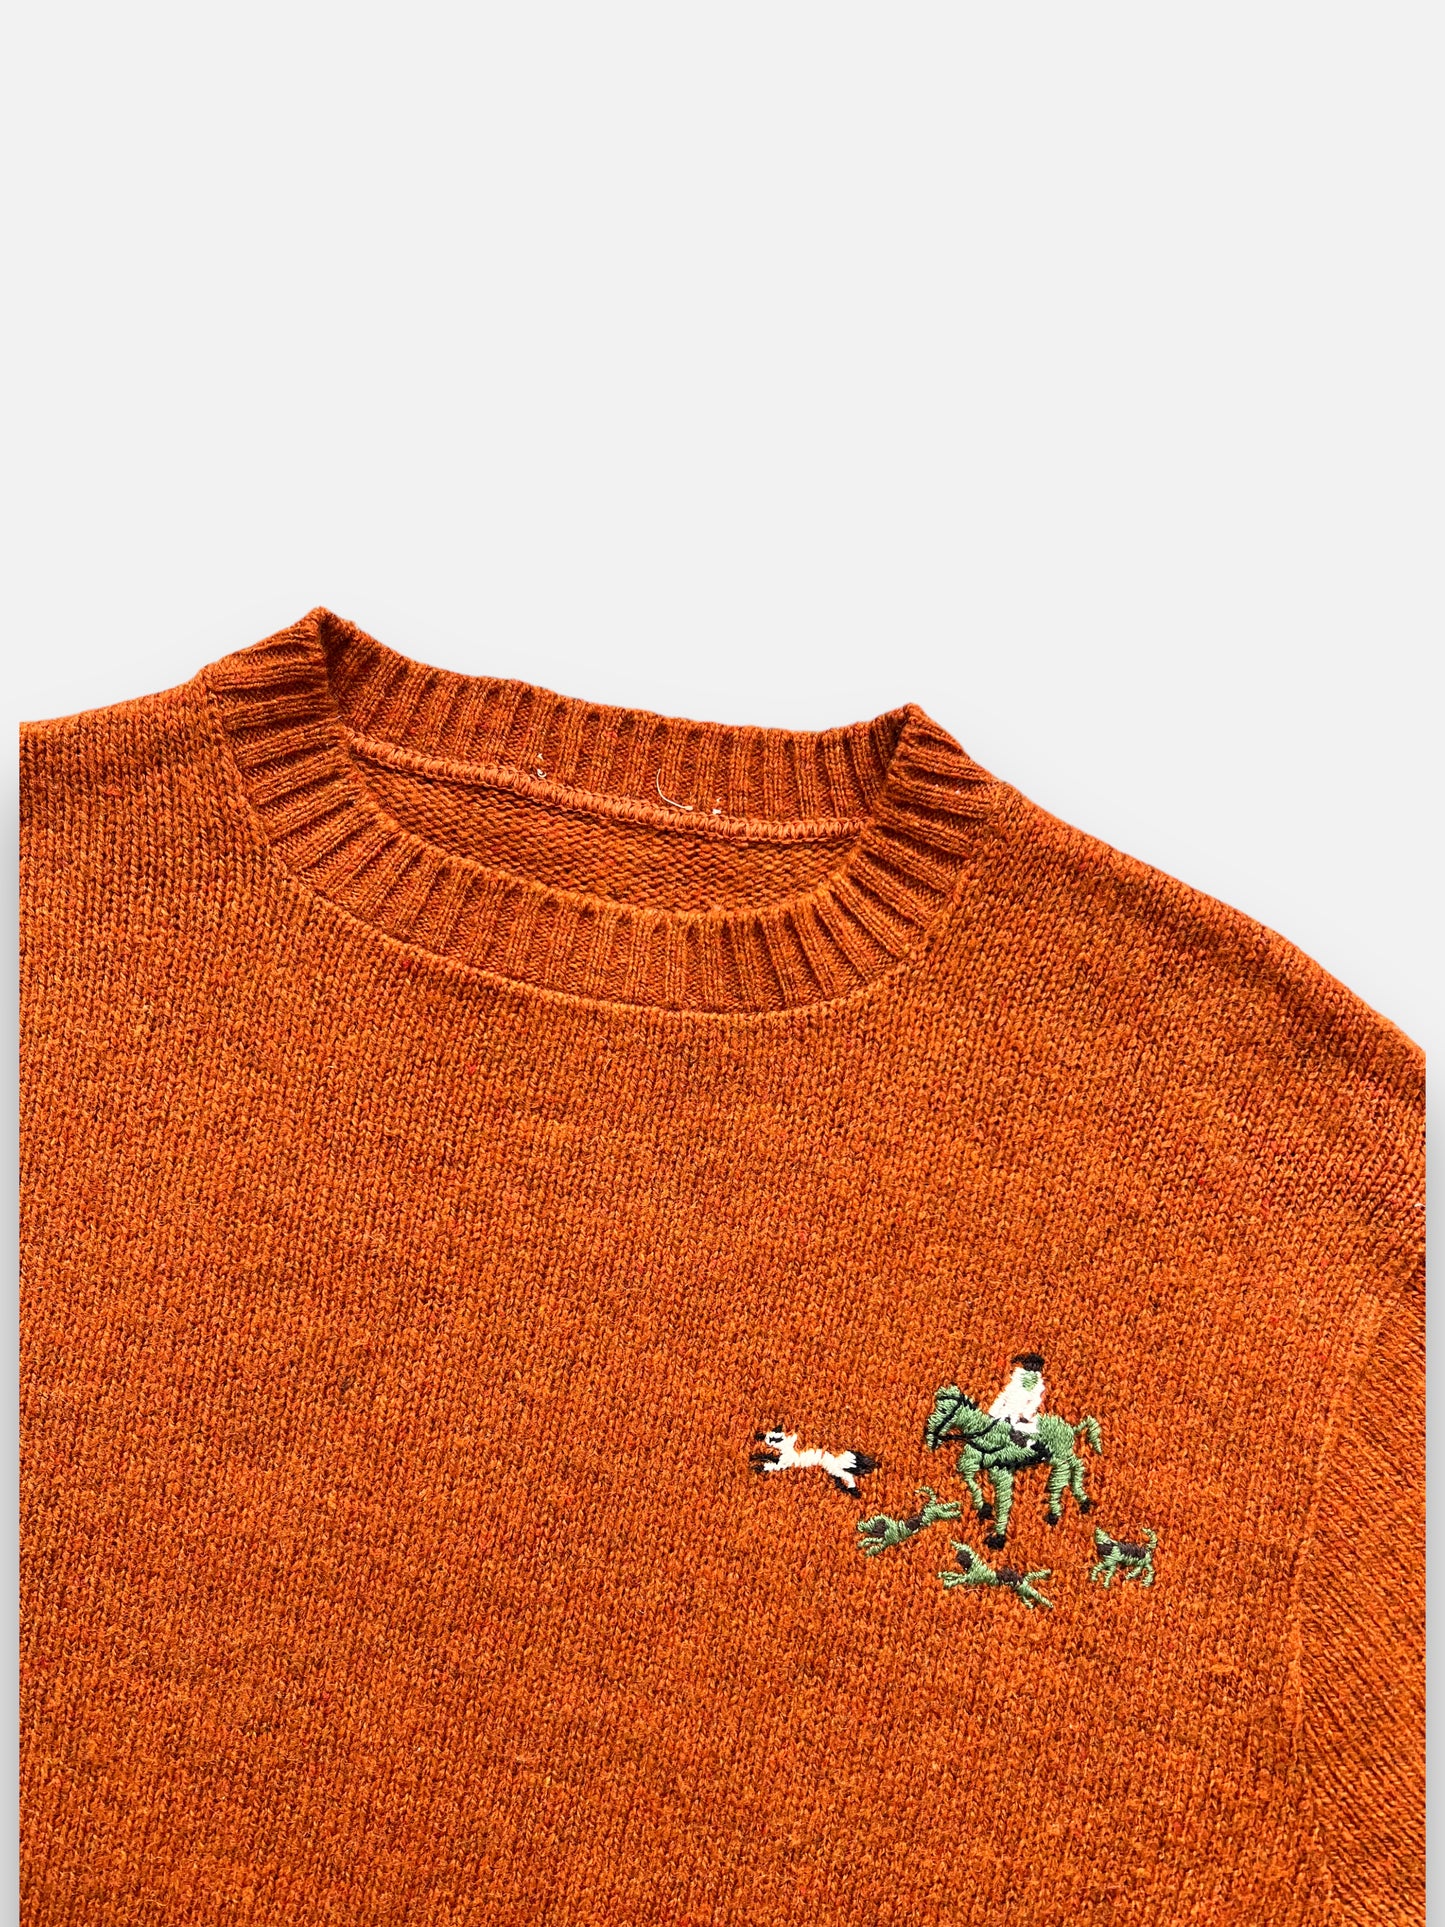 70s Jantzen Wool Sweater (S)